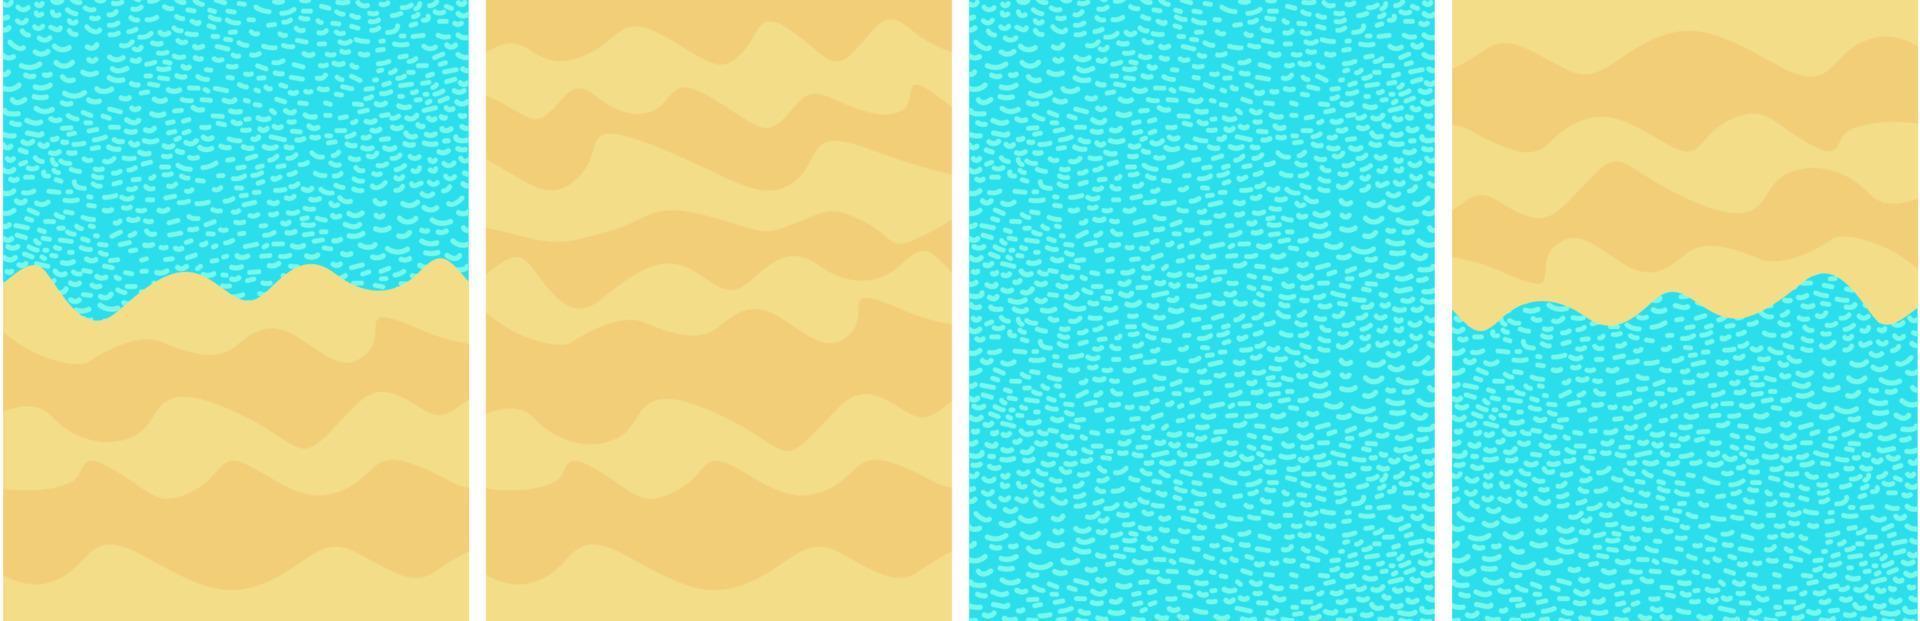 arena de playa ondulada y mar azul. fondo de verano para carteles. colocar. fondo de pantalla vector